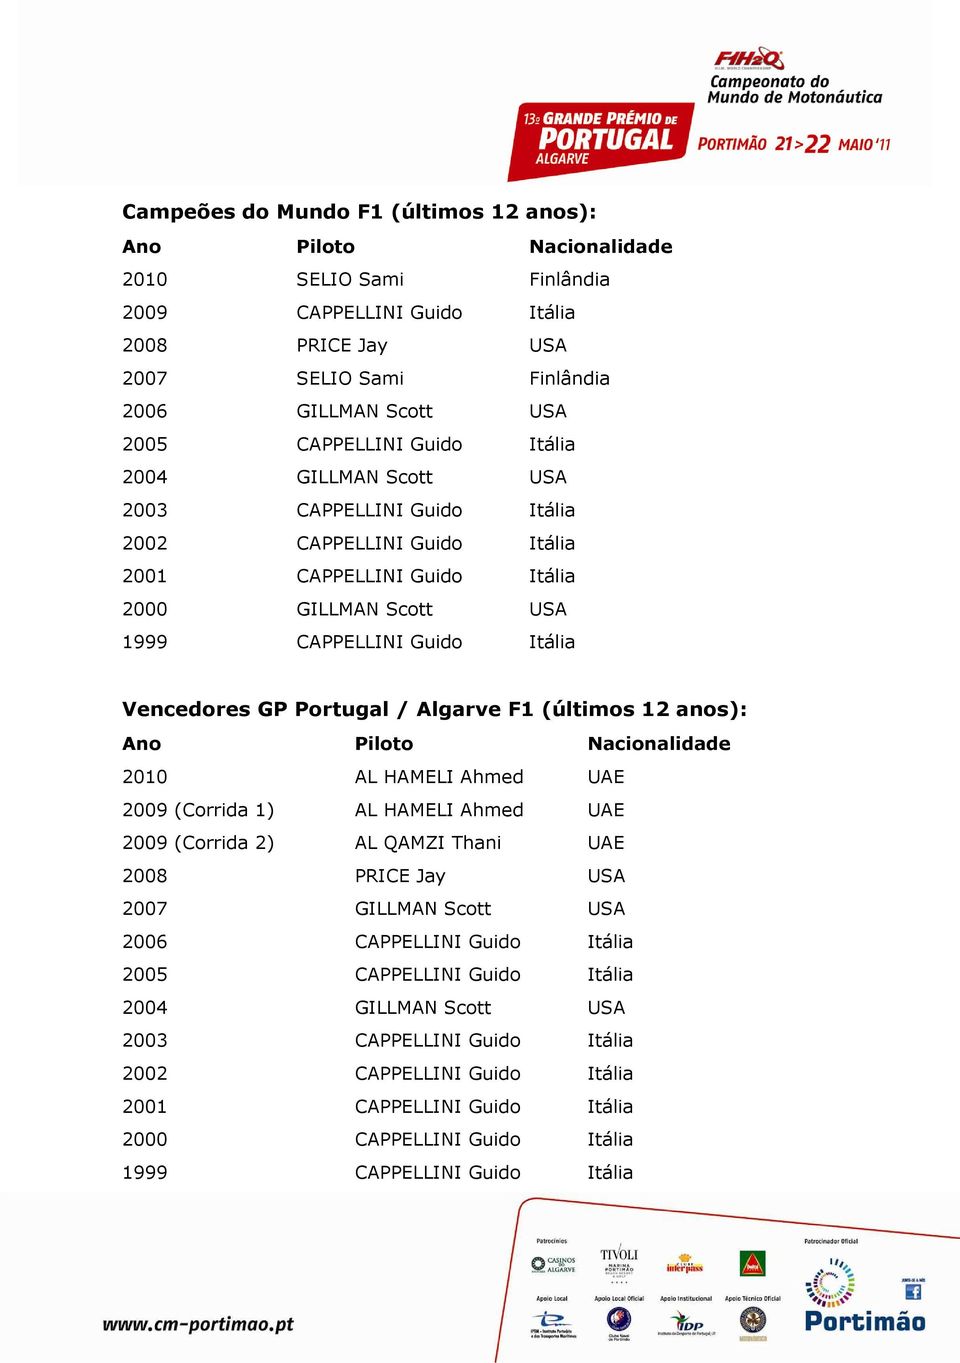 Portugal / Algarve F1 (últimos 12 anos): Ano Piloto Nacionalidade 2010 AL HAMELI Ahmed UAE 2009 (Corrida 1) AL HAMELI Ahmed UAE 2009 (Corrida 2) AL QAMZI Thani UAE 2008 PRICE Jay USA 2007 GILLMAN